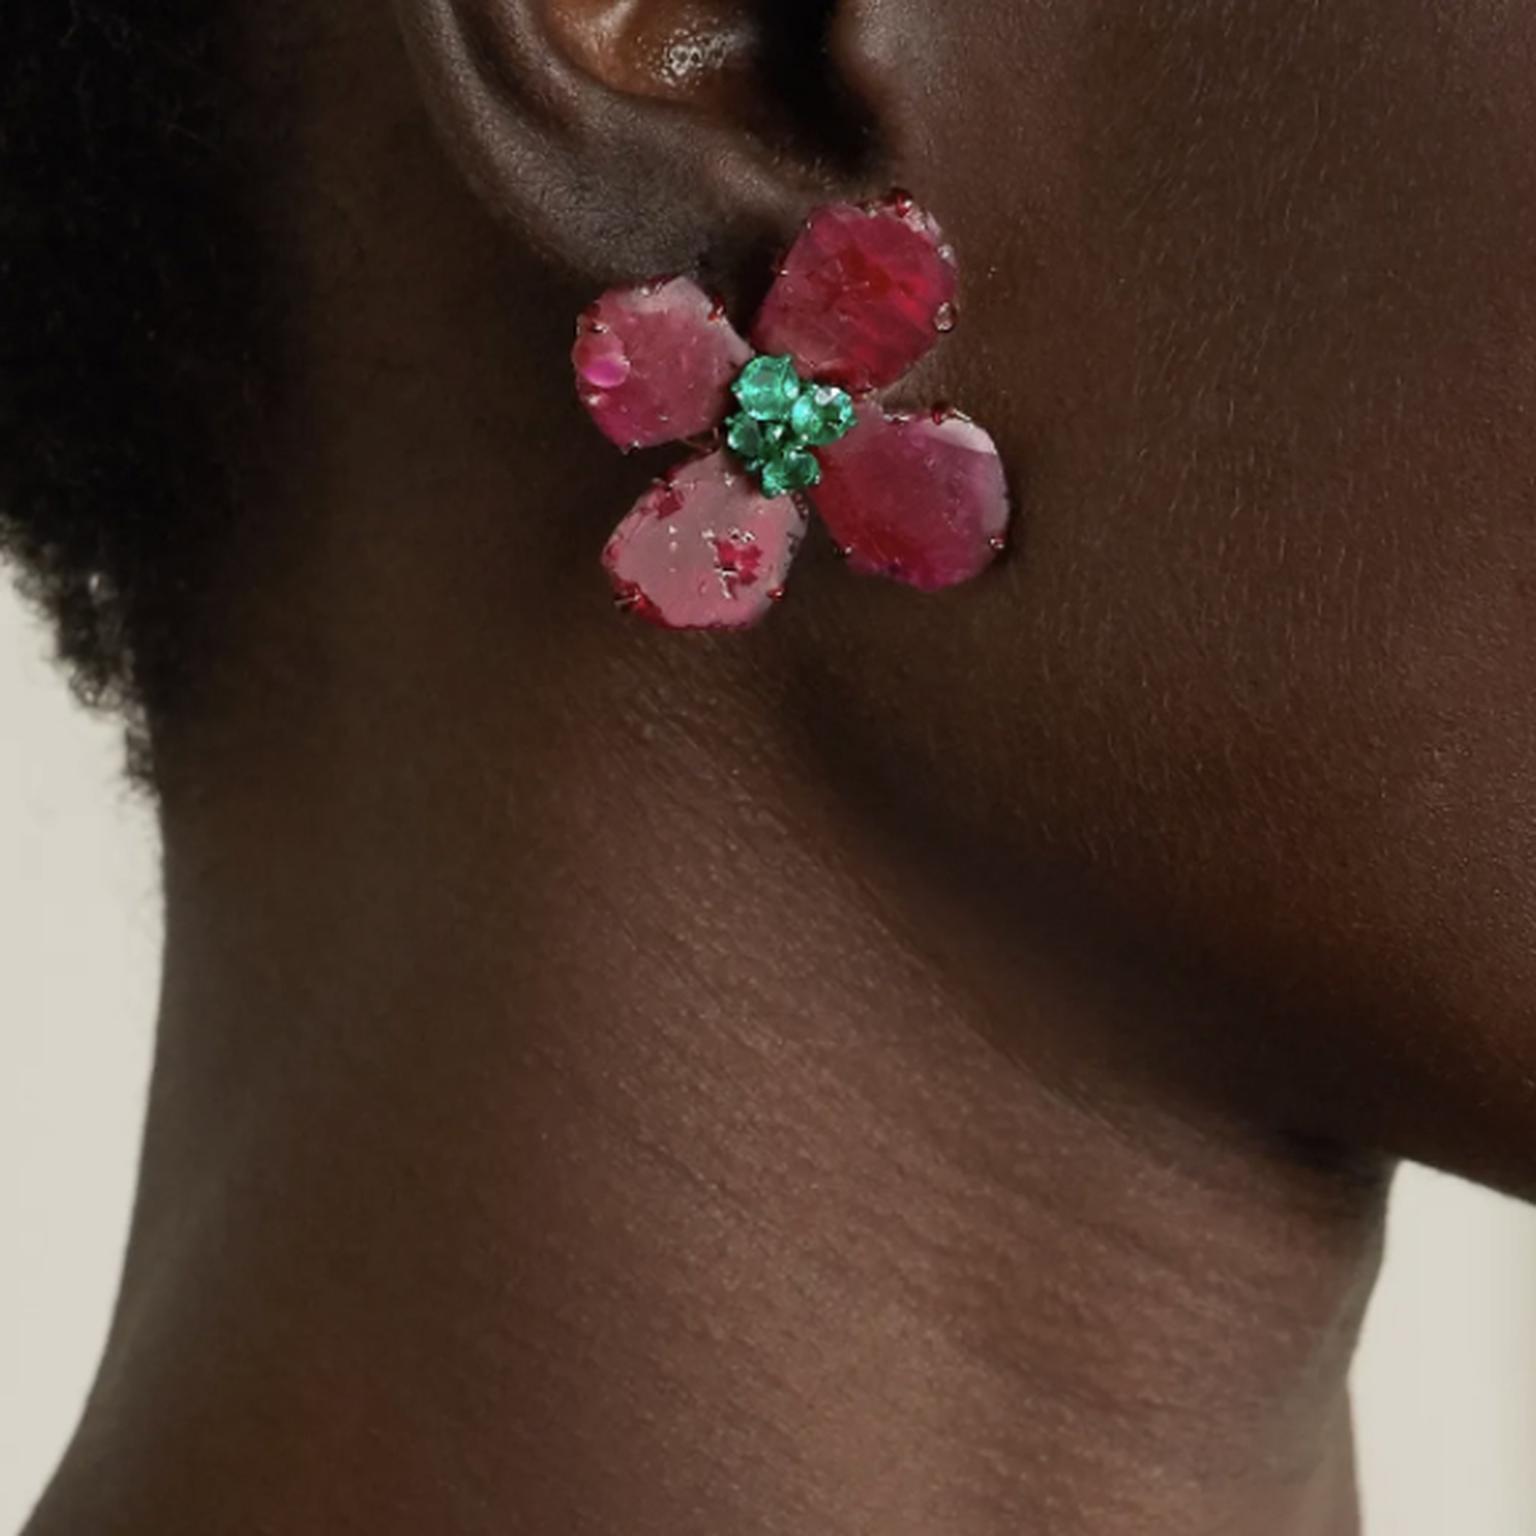 Earrings by Bina Goenka on model